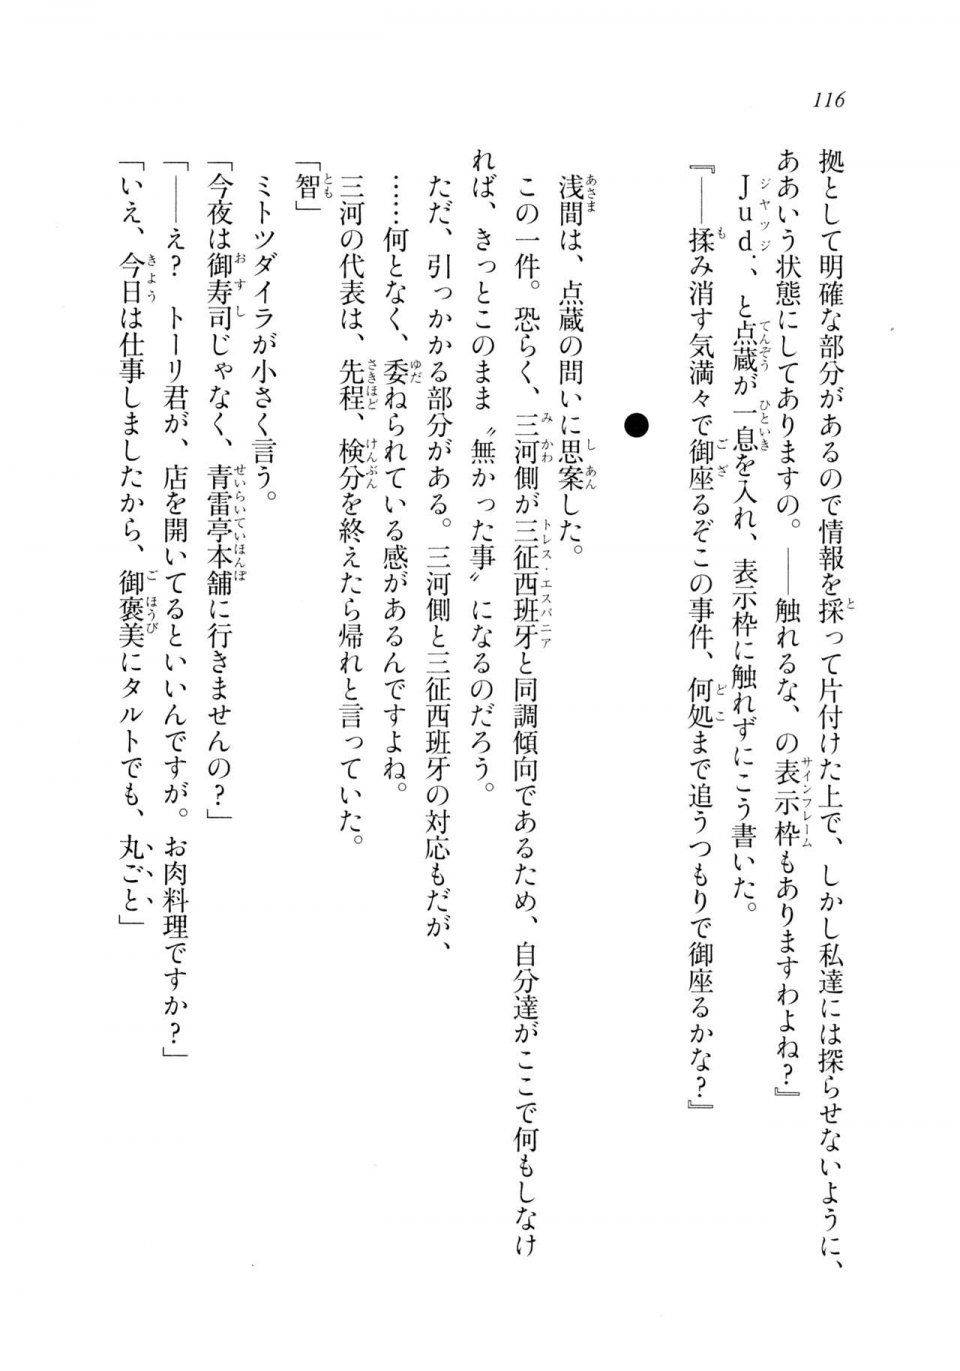 Kyoukai Senjou no Horizon LN Sidestory Vol 2 - Photo #114